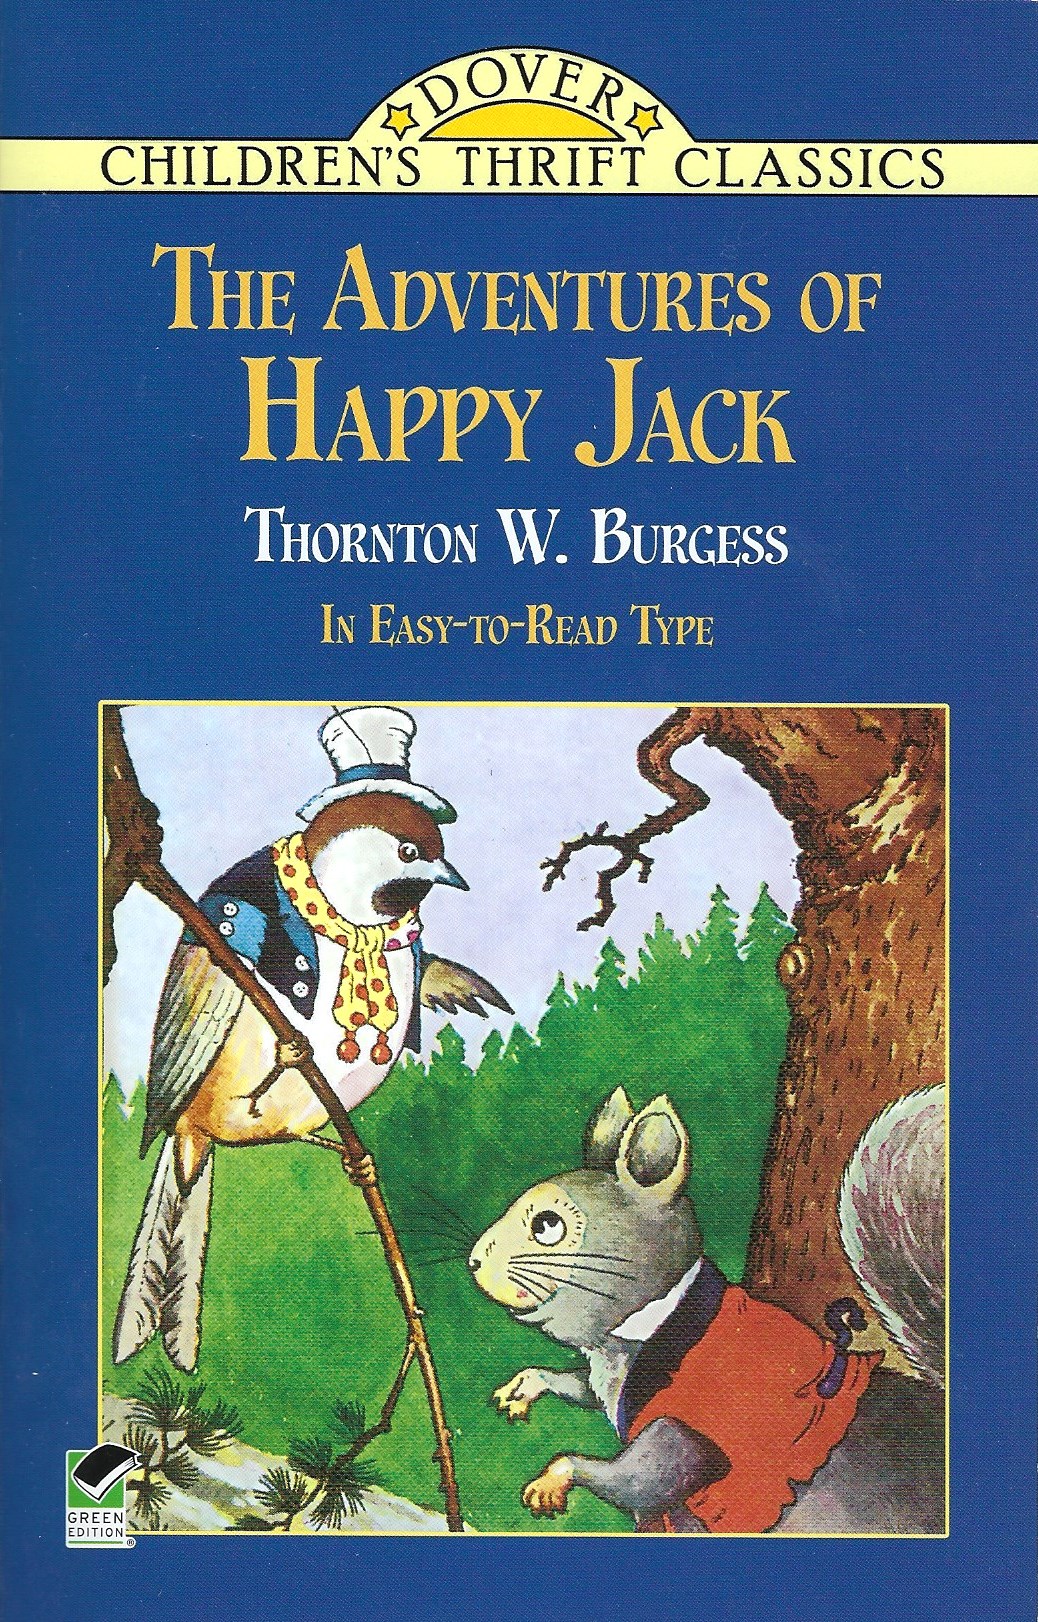 THE ADVENTURES OF HAPPY JACK Thornton W. Burgess